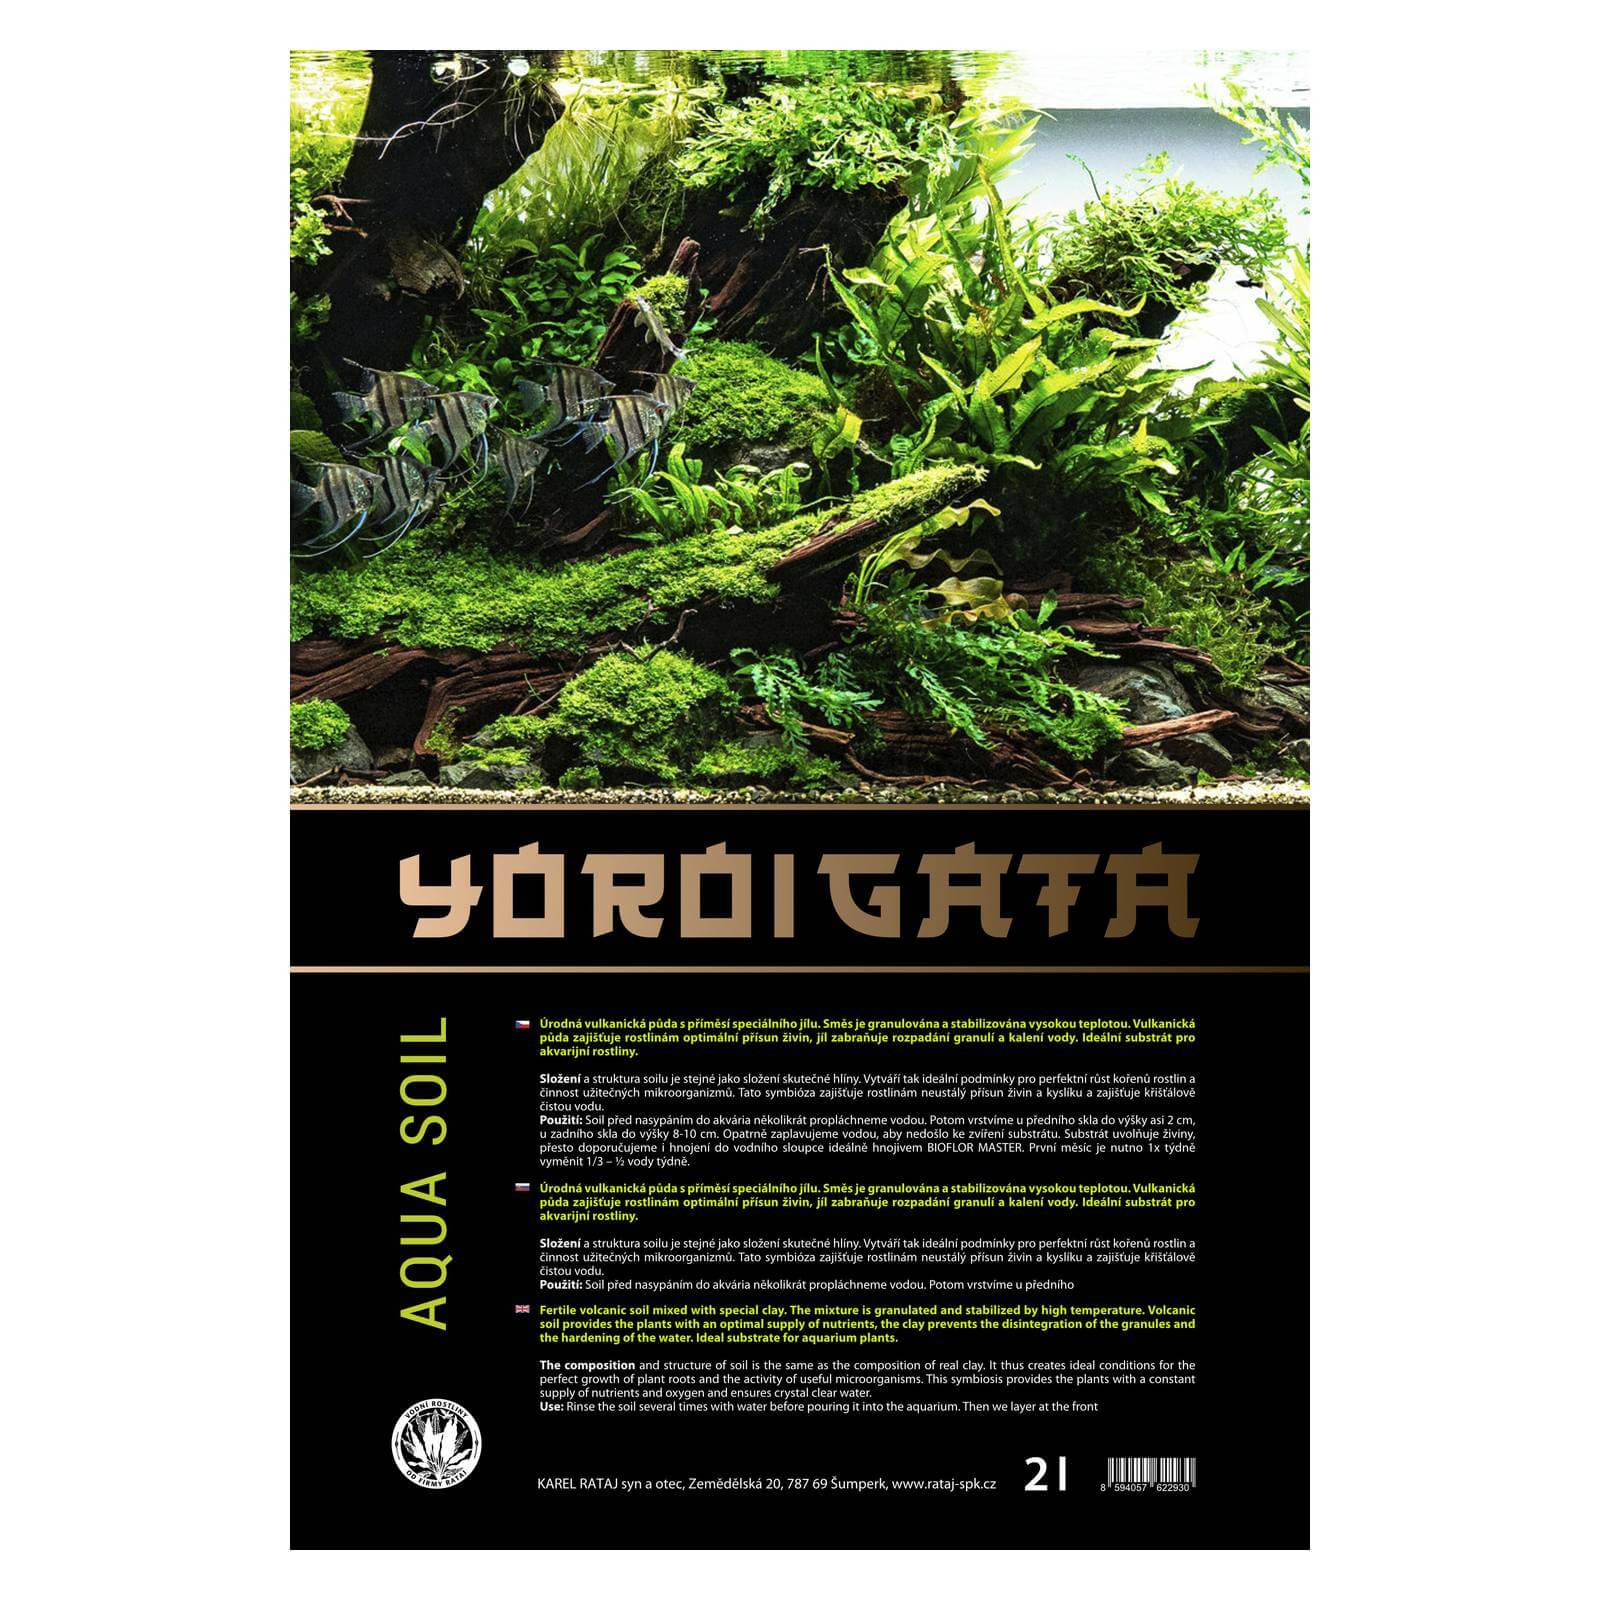 YOROIGATA aquatic soil 2l